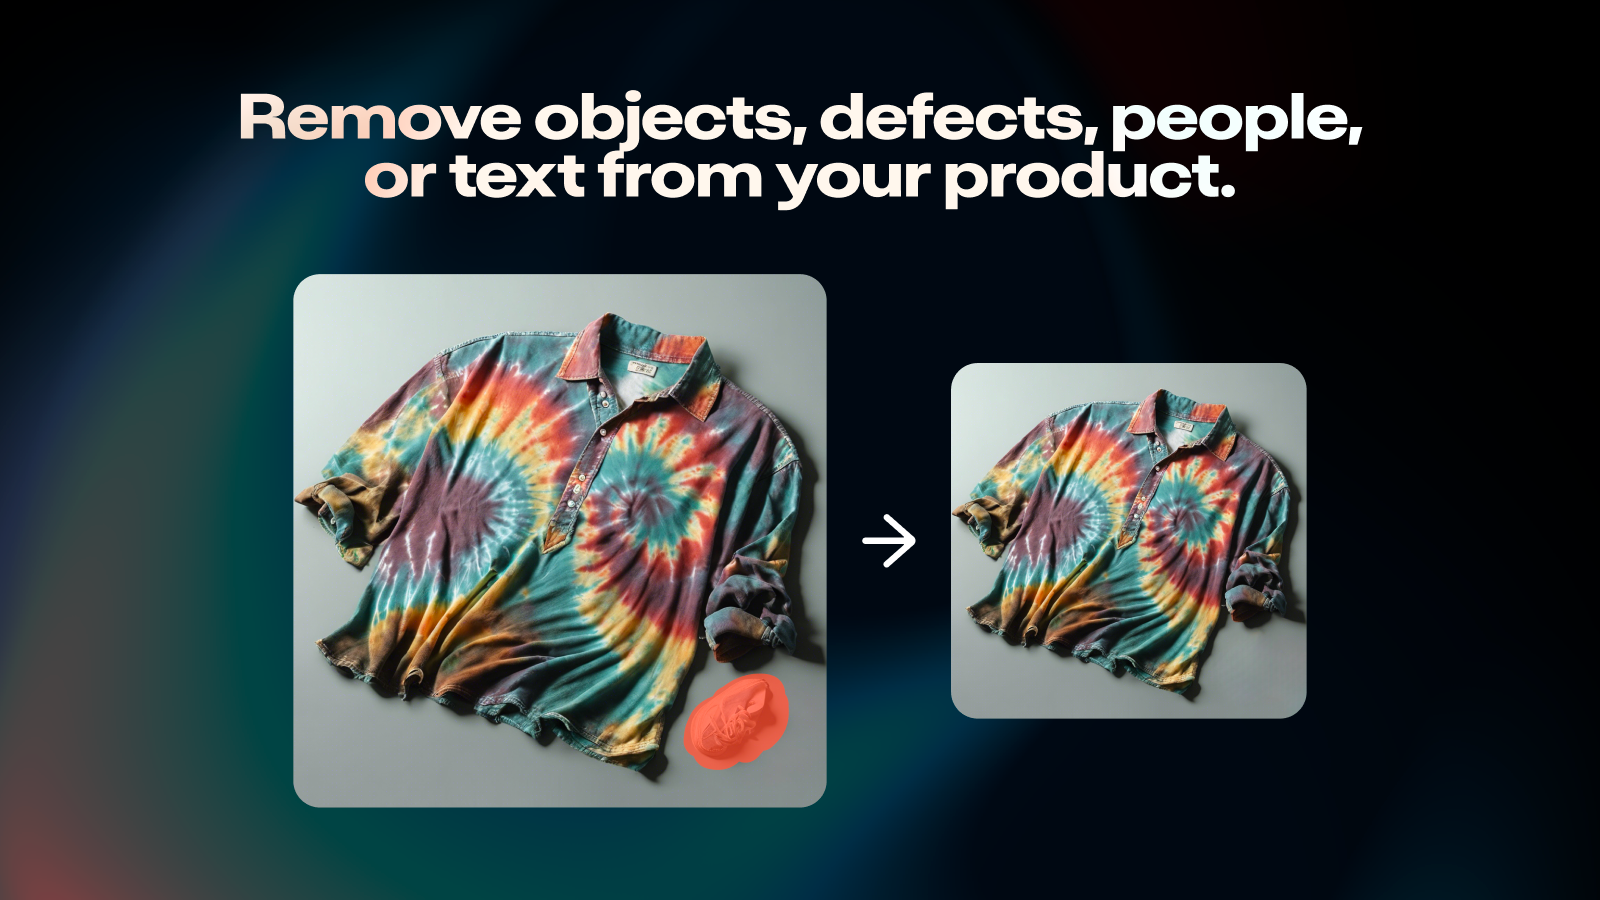 Verwijder objecten, defecten, mensen of tekst uit uw creatie